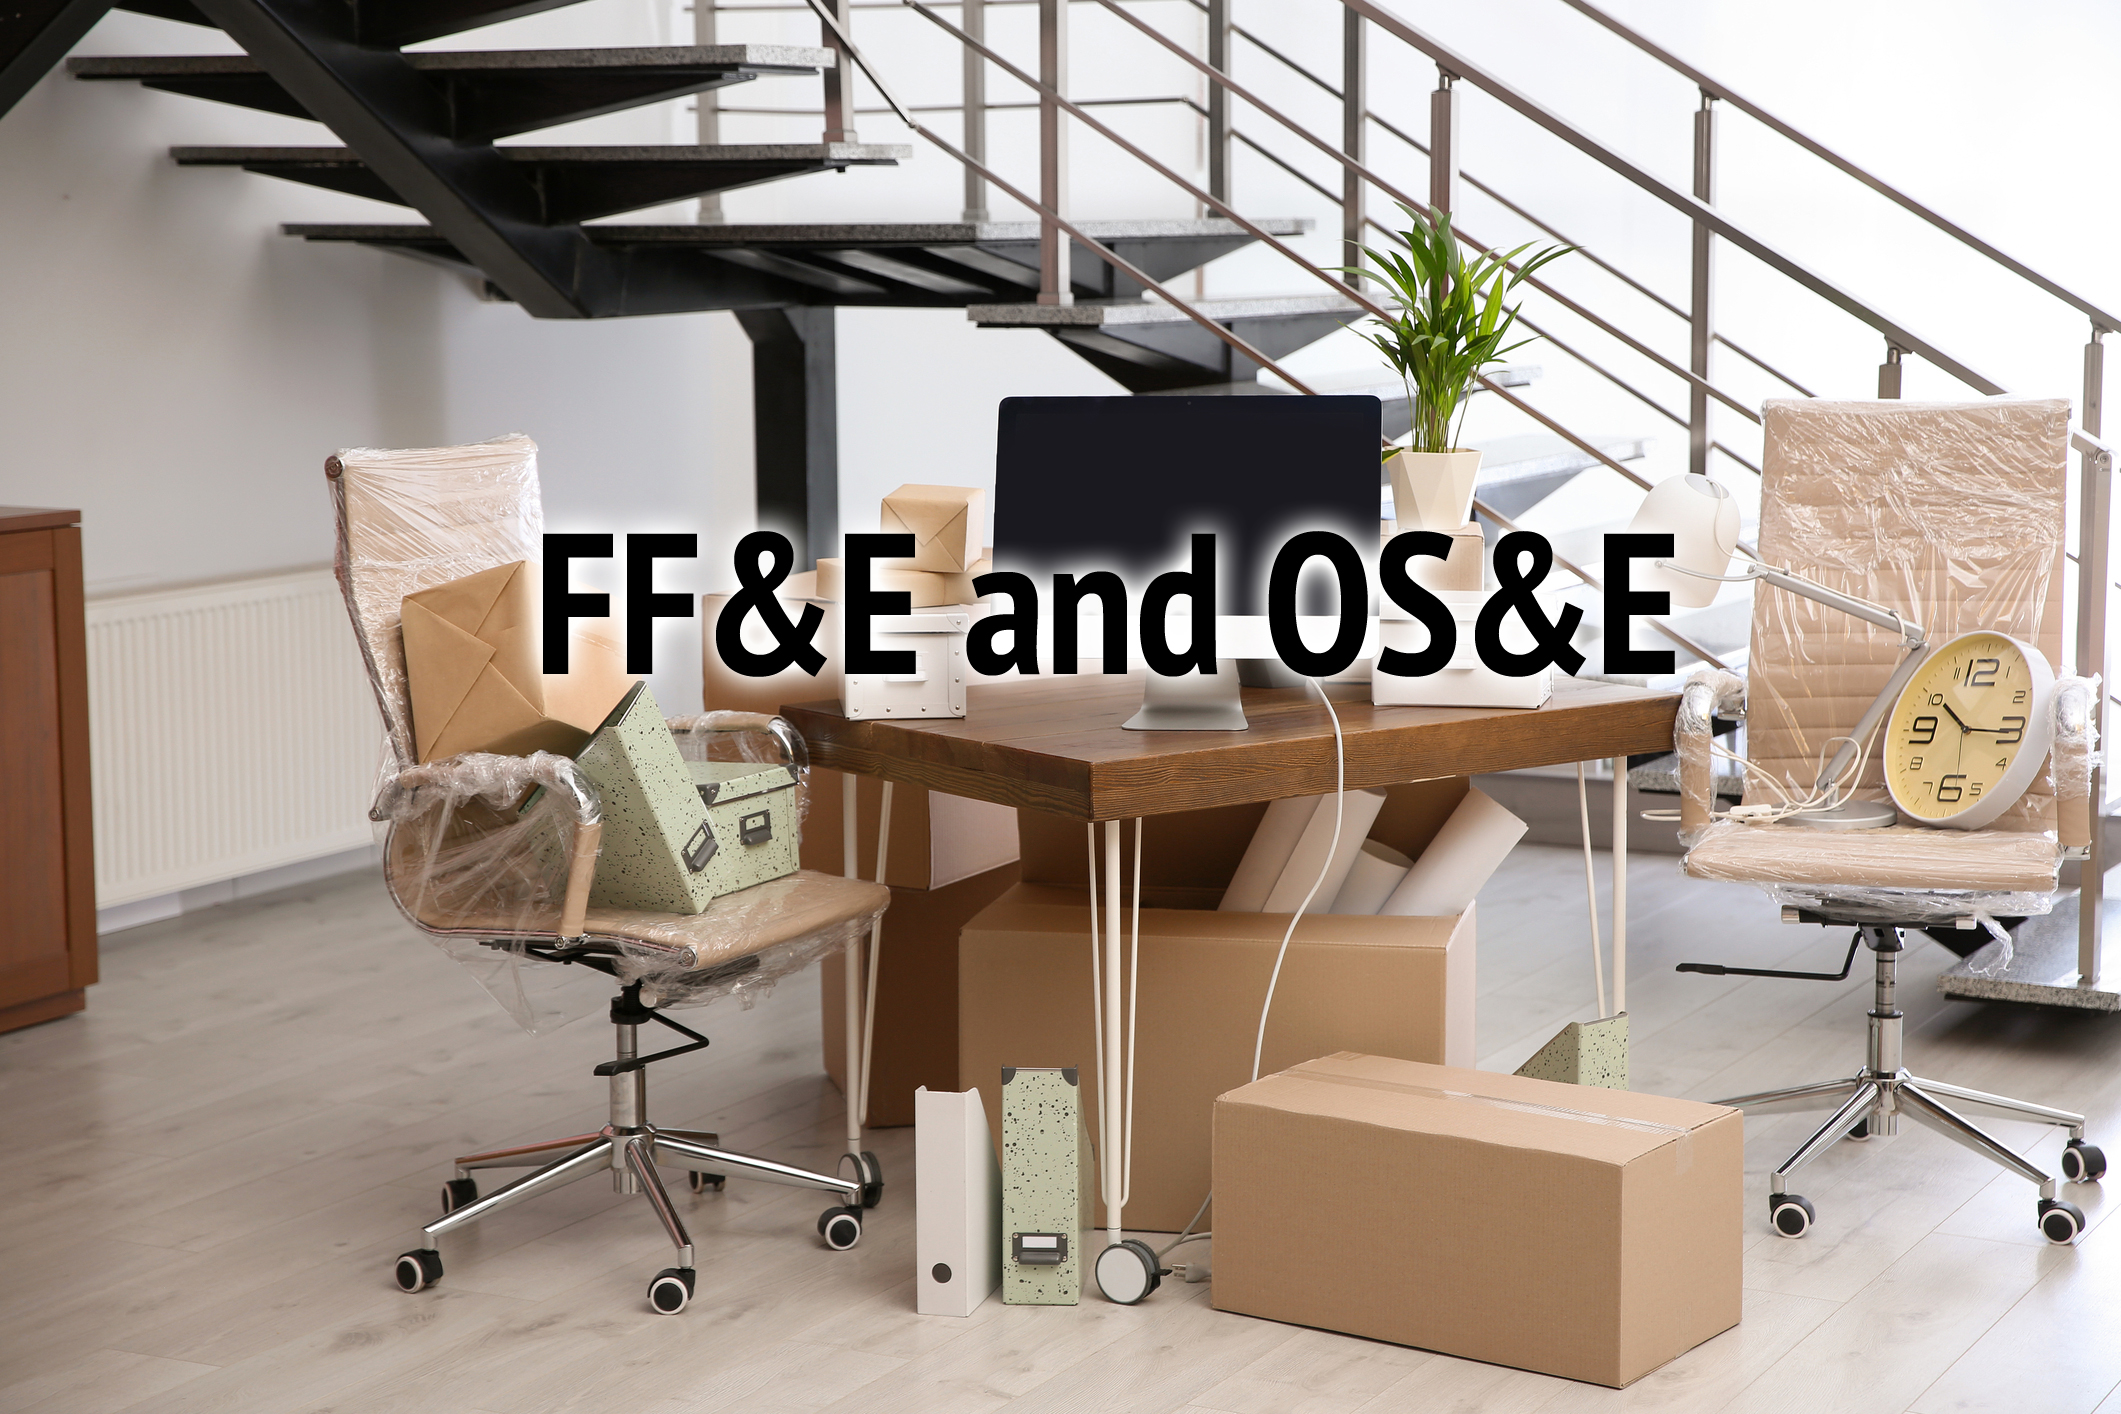 FF&E Logistics and OS&E Logistics - A Short Introduction